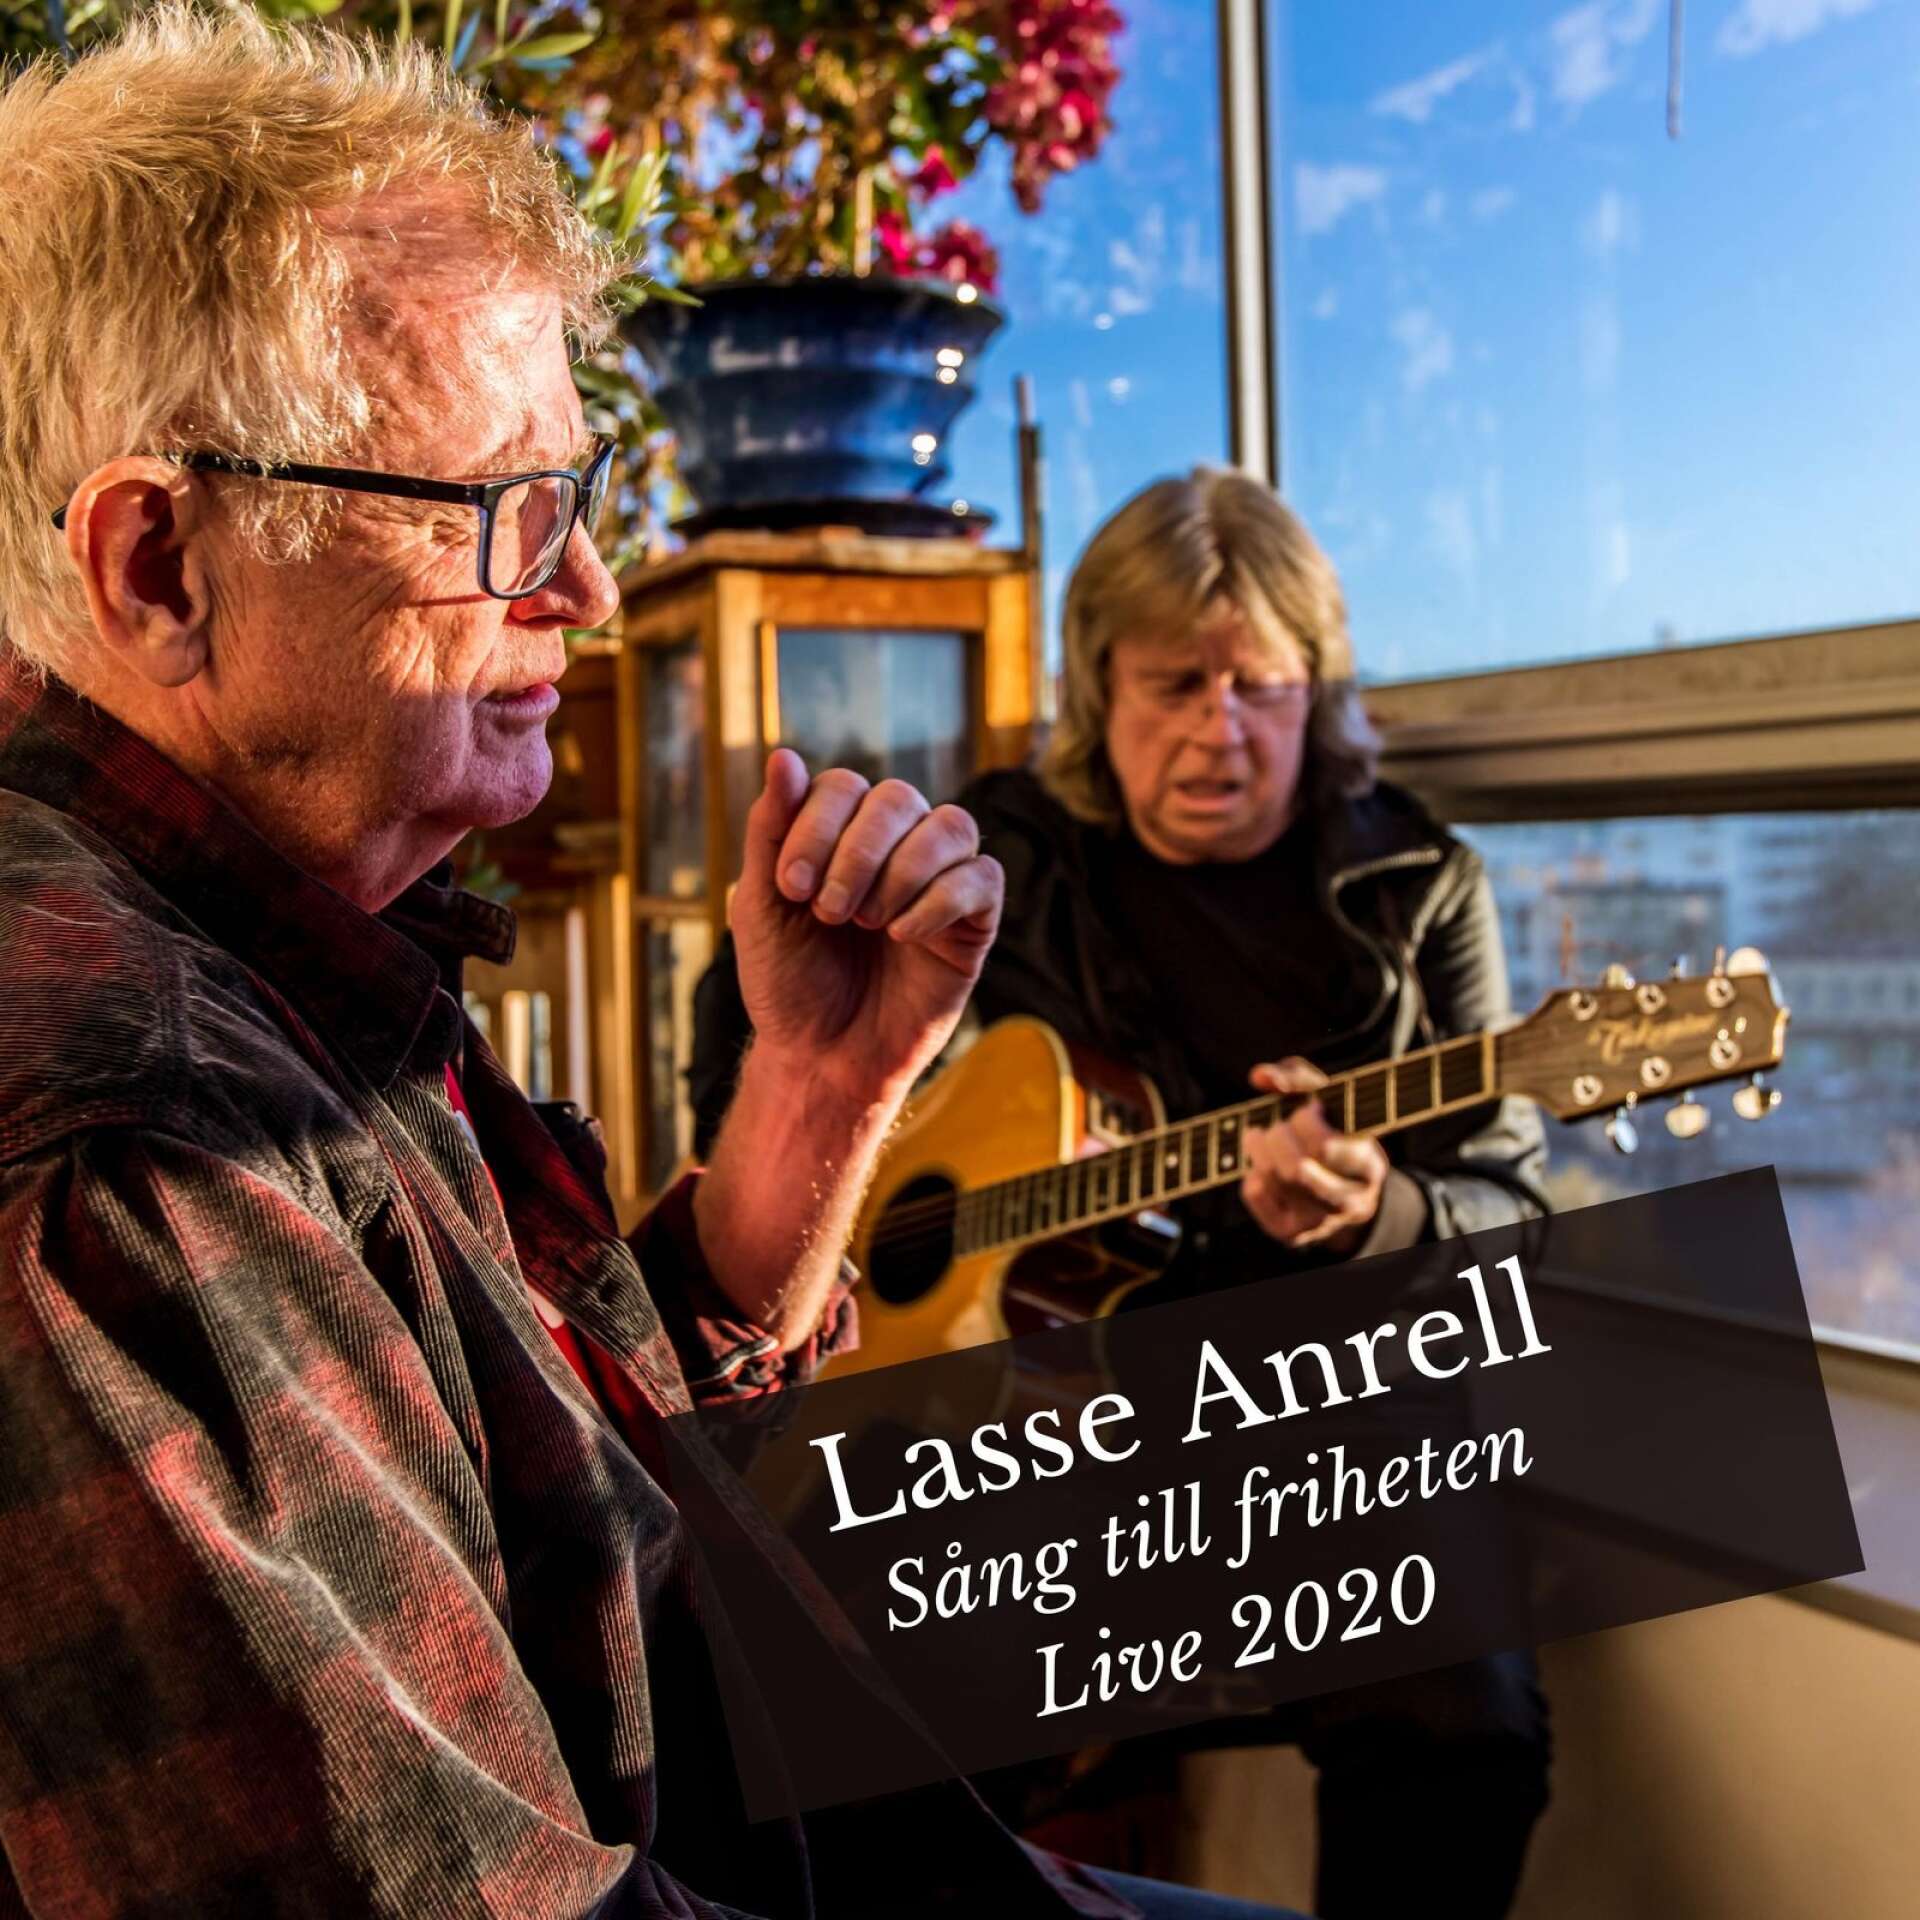 Lasse Anrell och Janne Schaffer har en låt ihop.